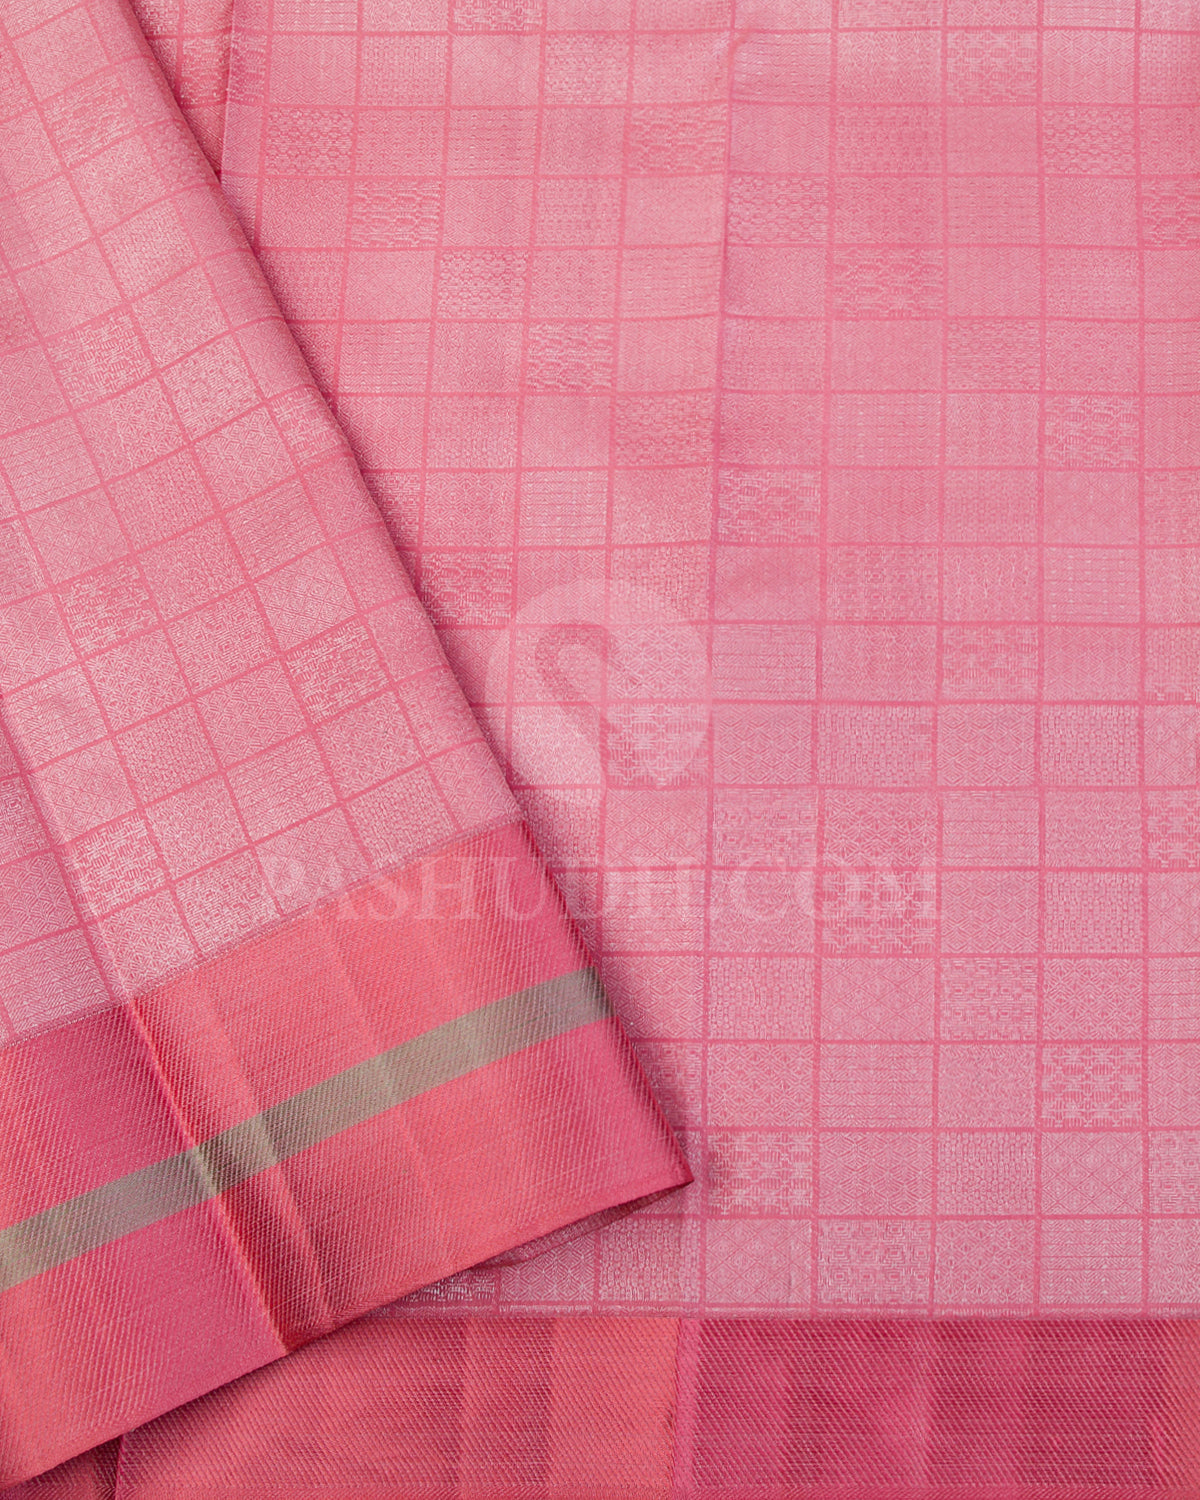 Lavender and Peachy Pink Kanjivaram Silk Saree - D536(B) - View 2